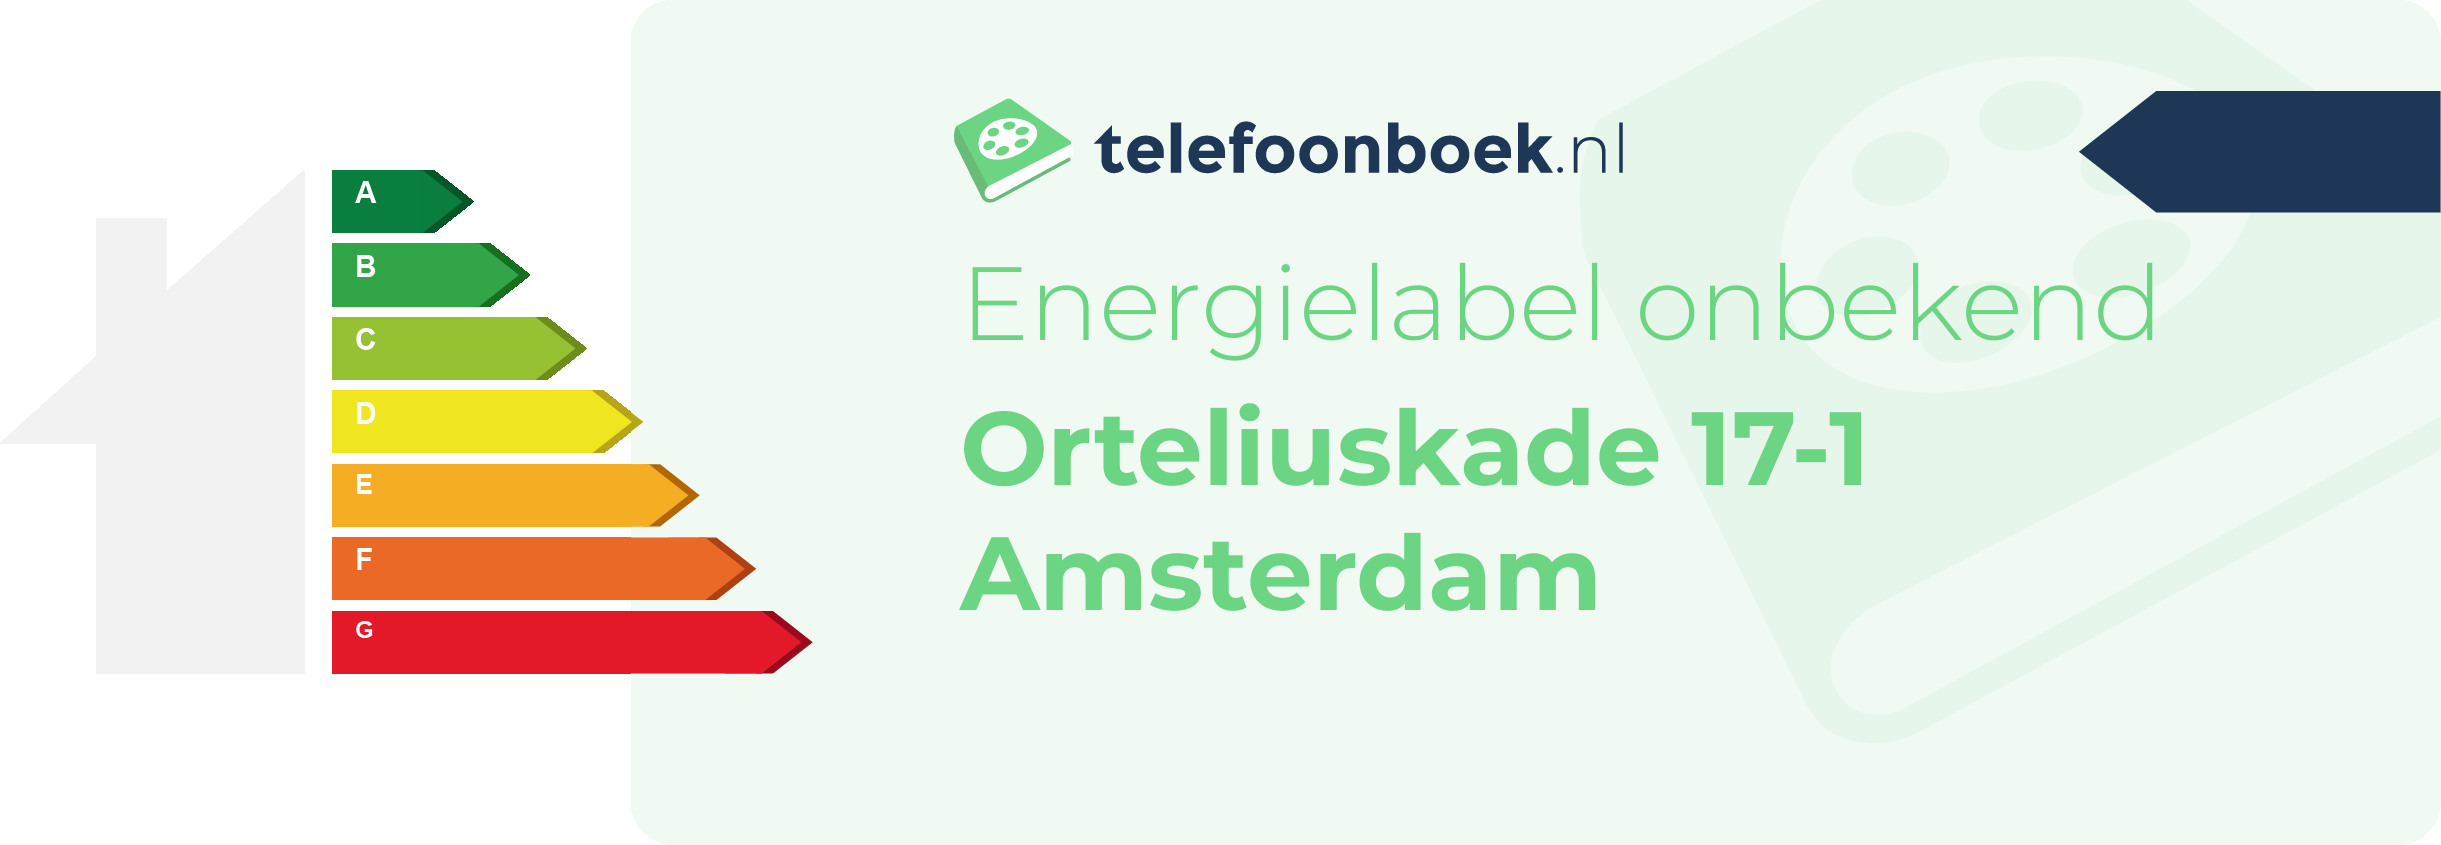 Energielabel Orteliuskade 17-1 Amsterdam